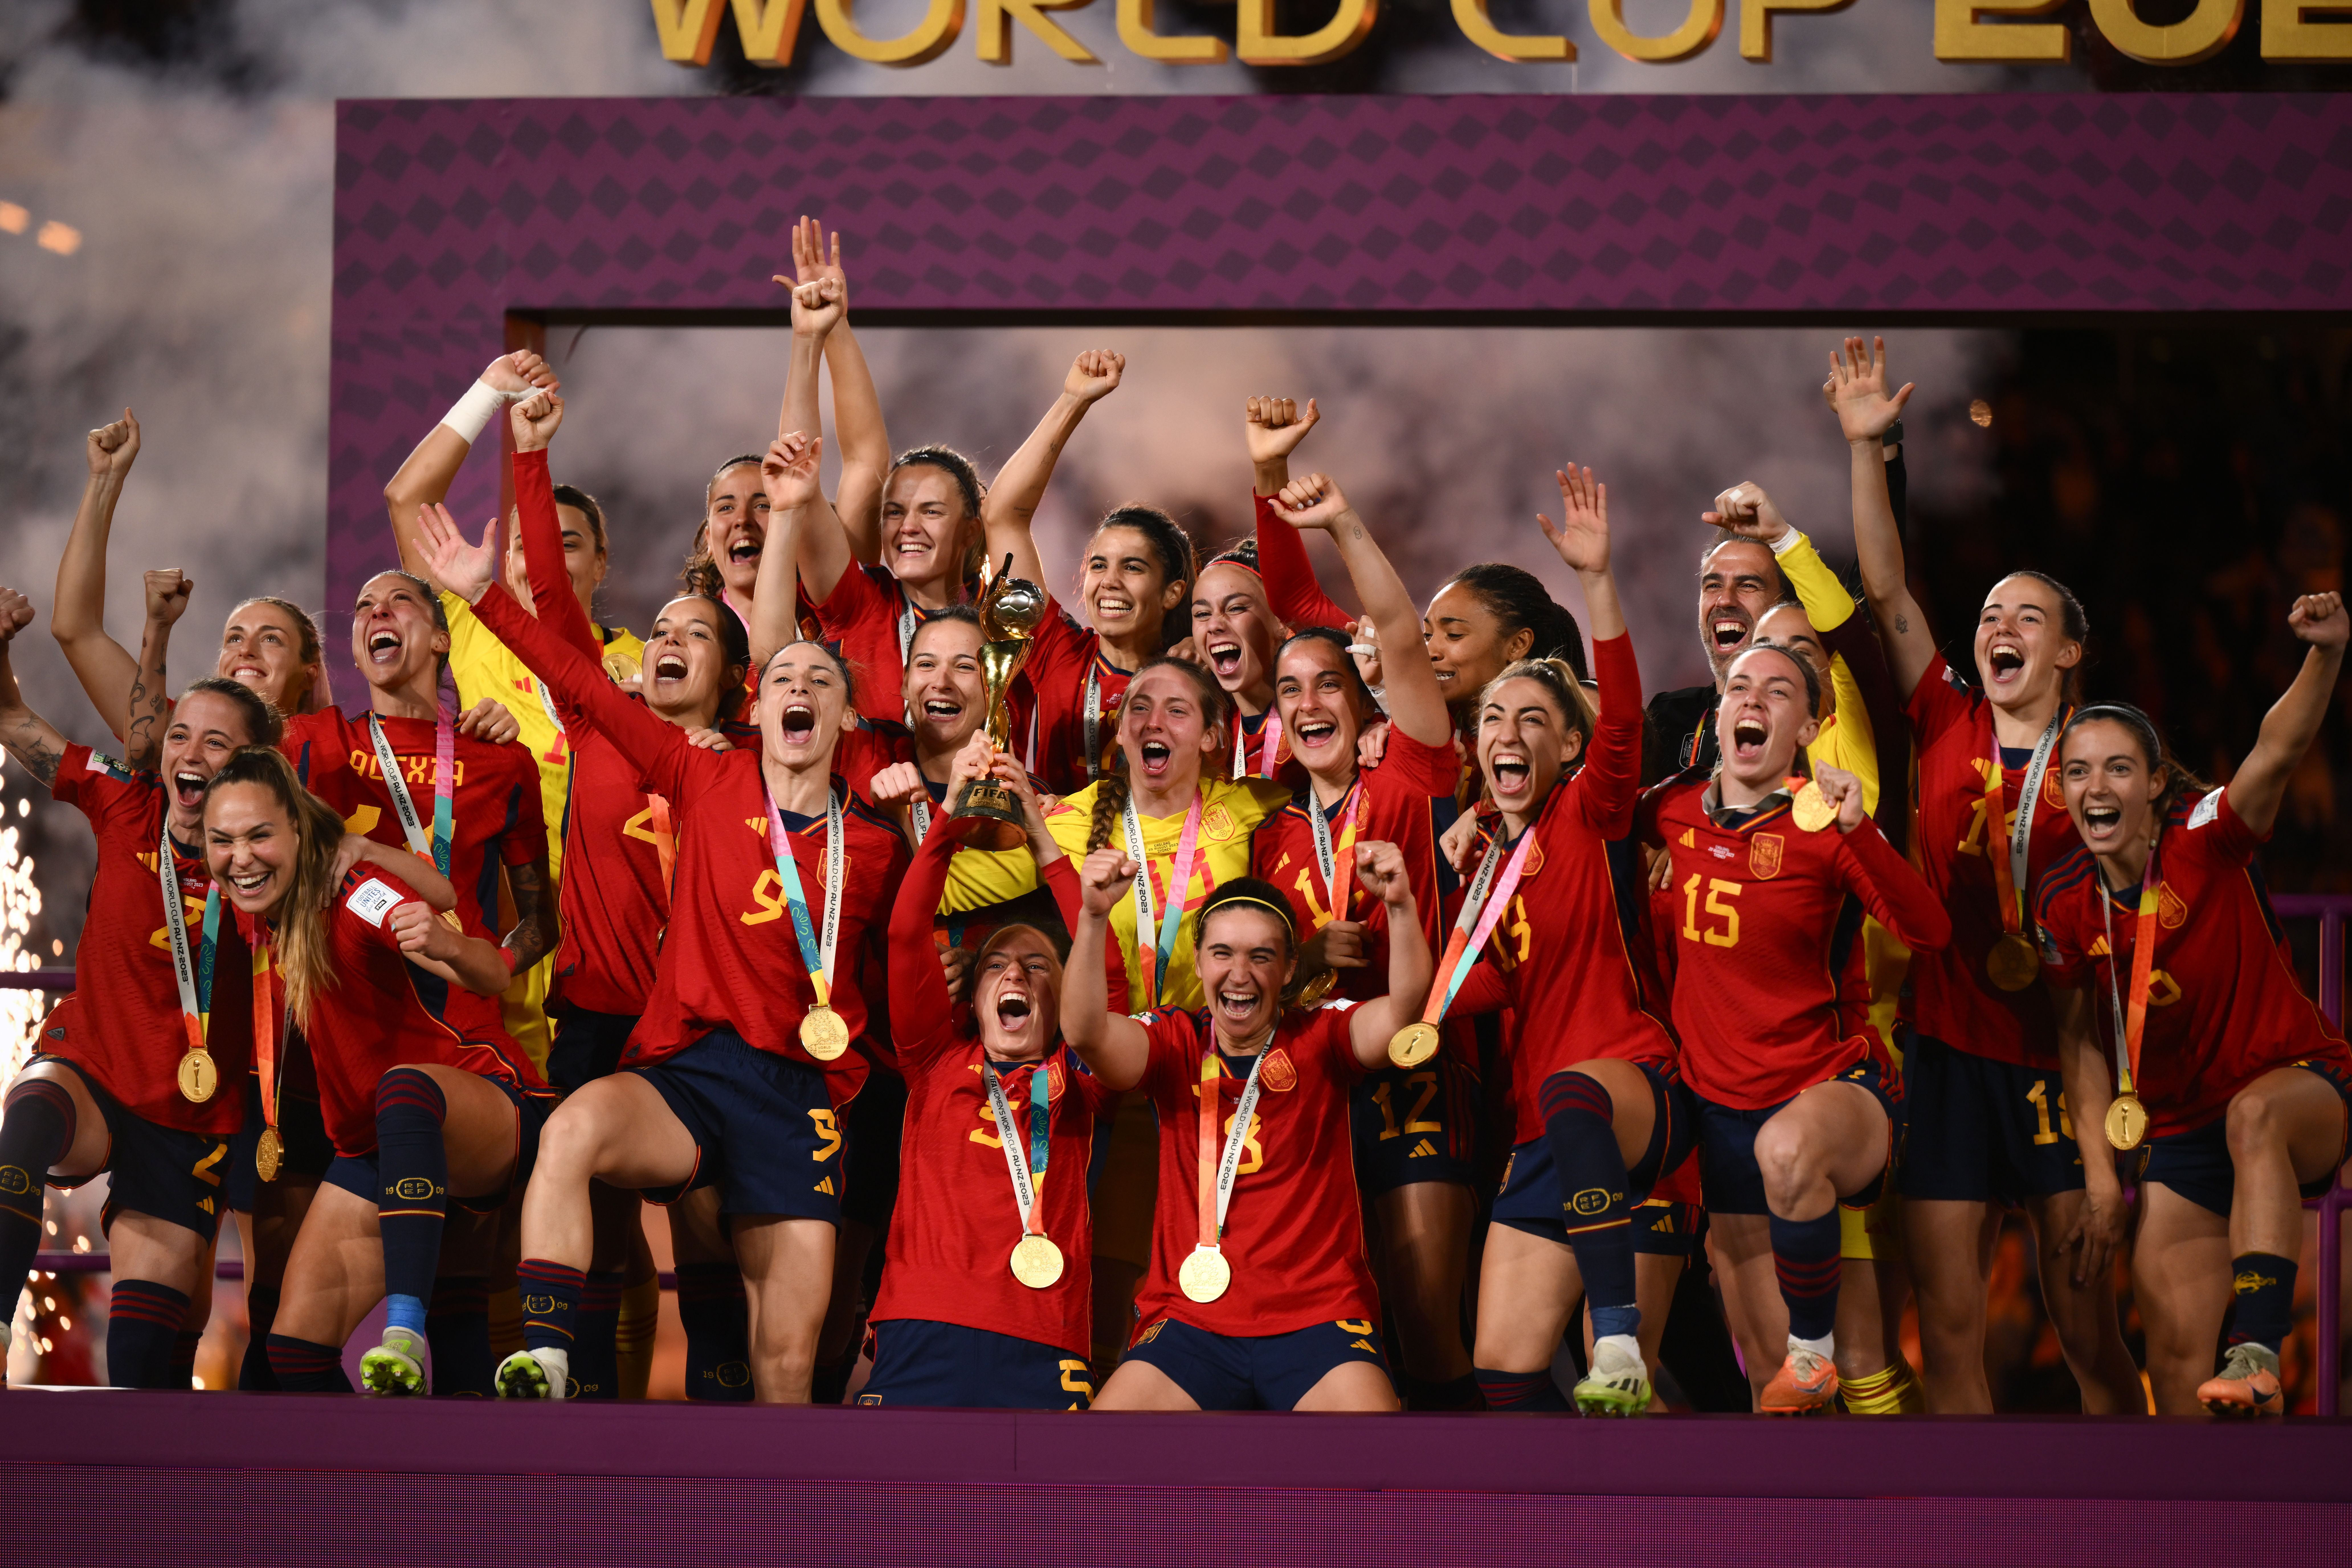 Audiencias: La victoria de España en la final del Mundial Femenino (65,7%) bate récords ante 5,6 millones de espectadores